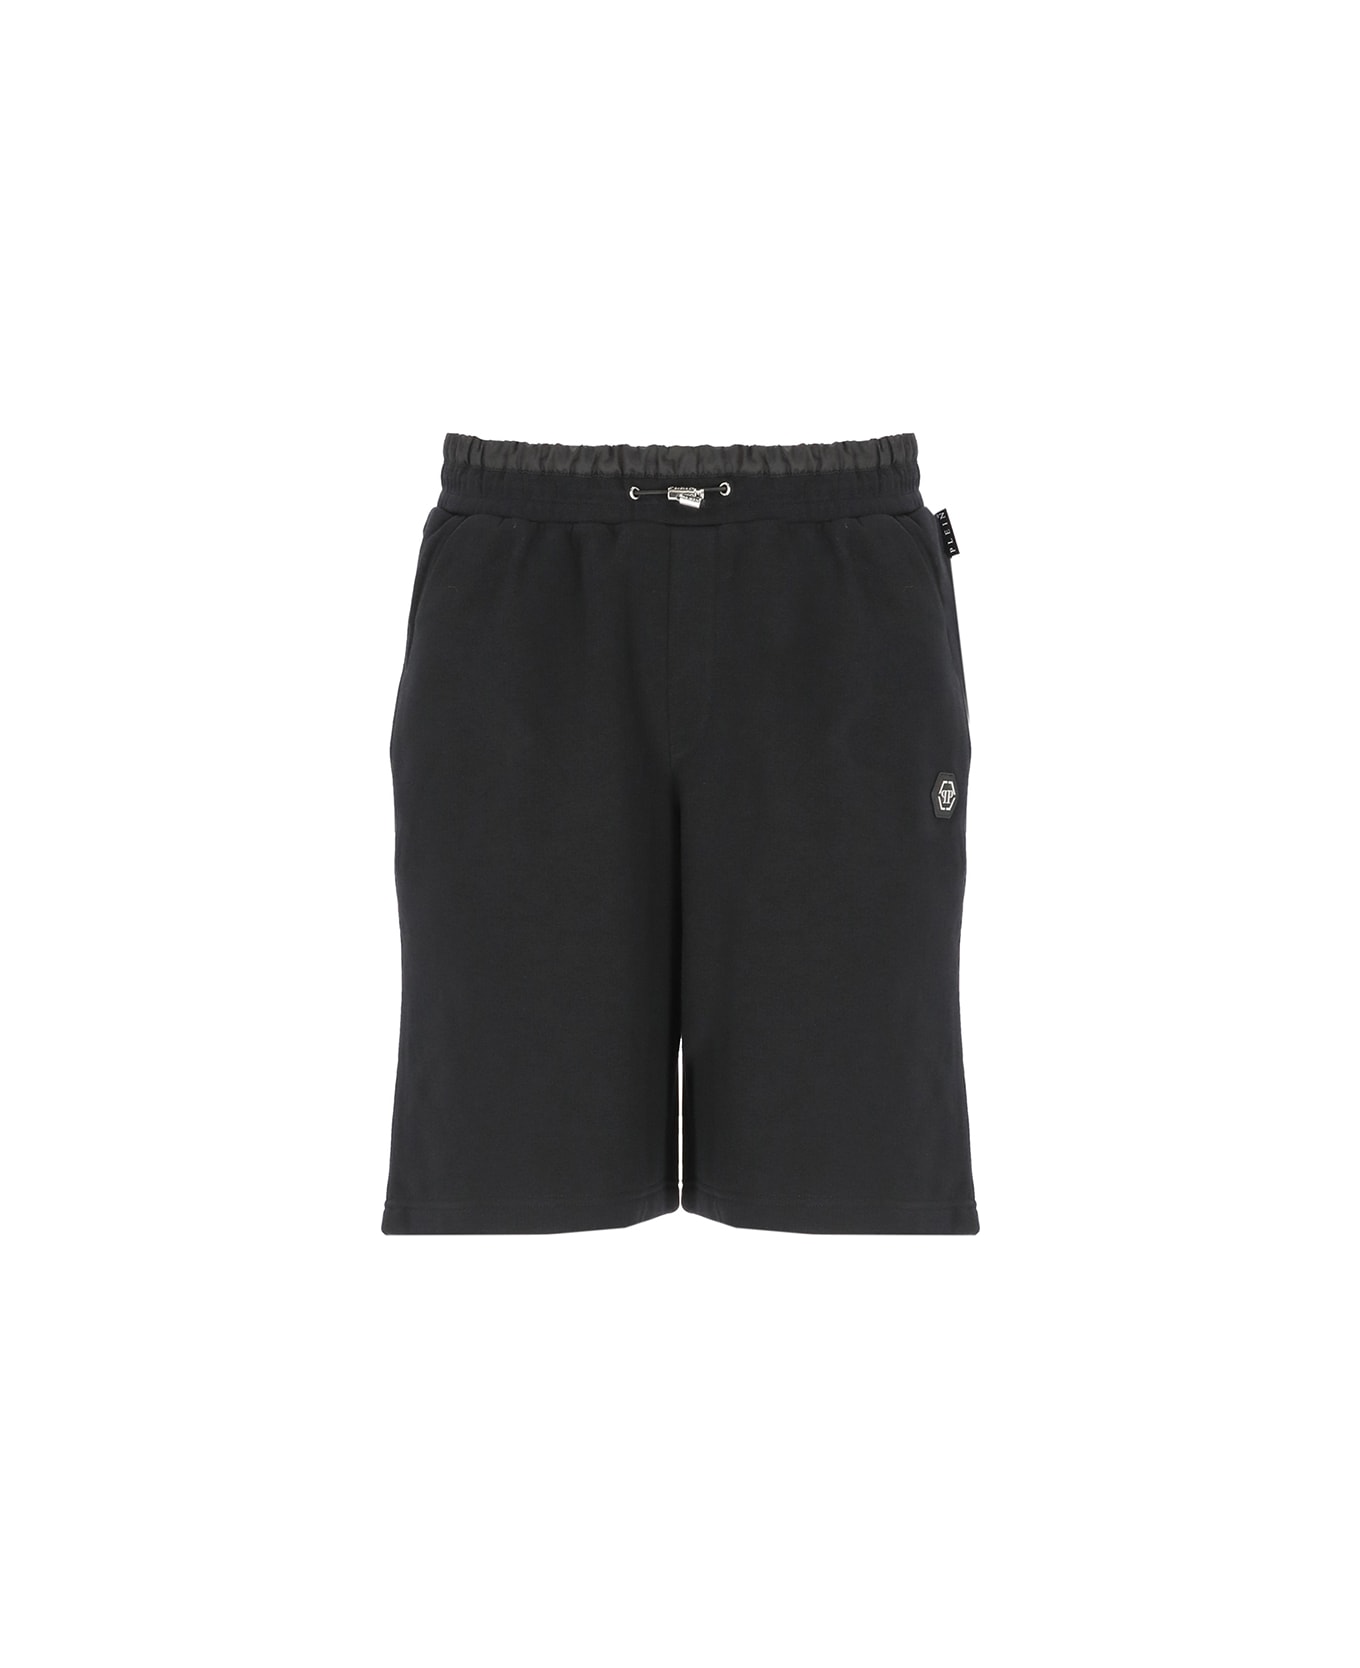 Philipp Plein Hexagon Bermuda Shorts - Black ショートパンツ